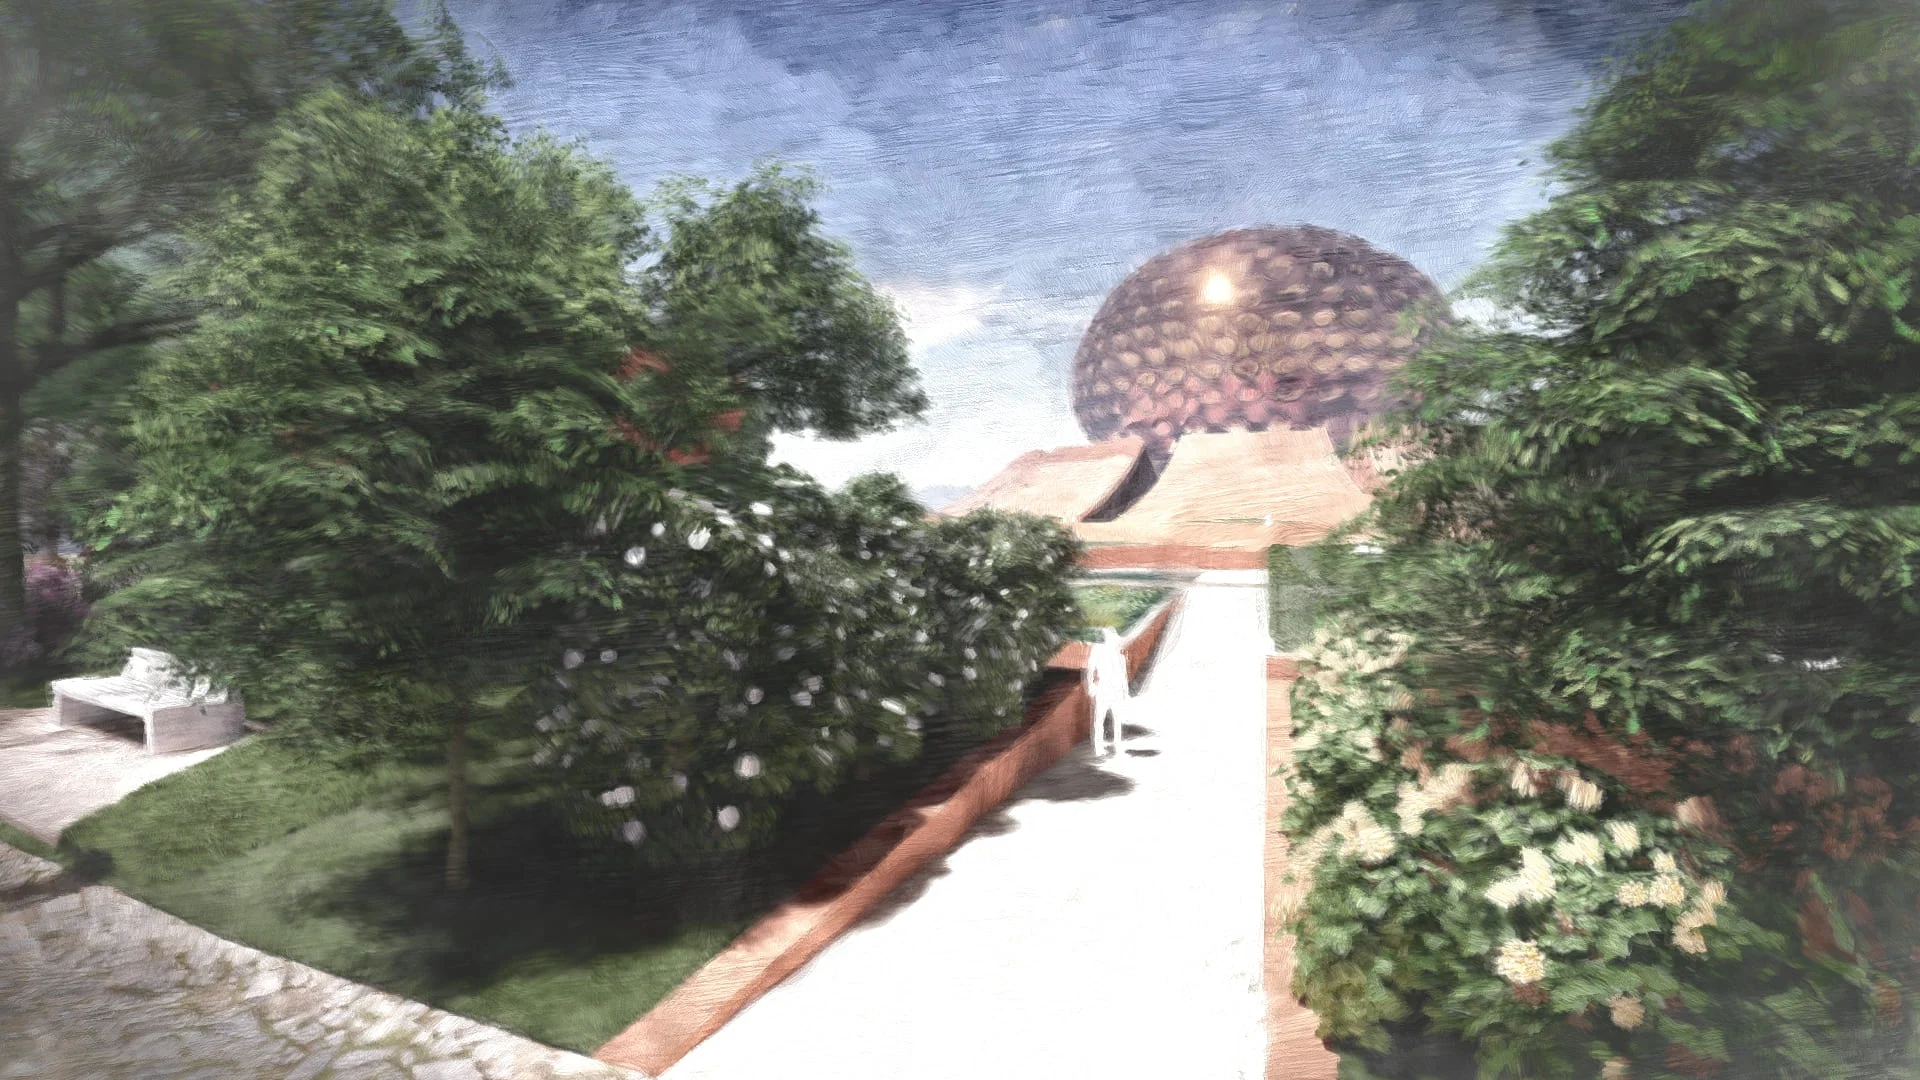 Auroville/Matrimandir